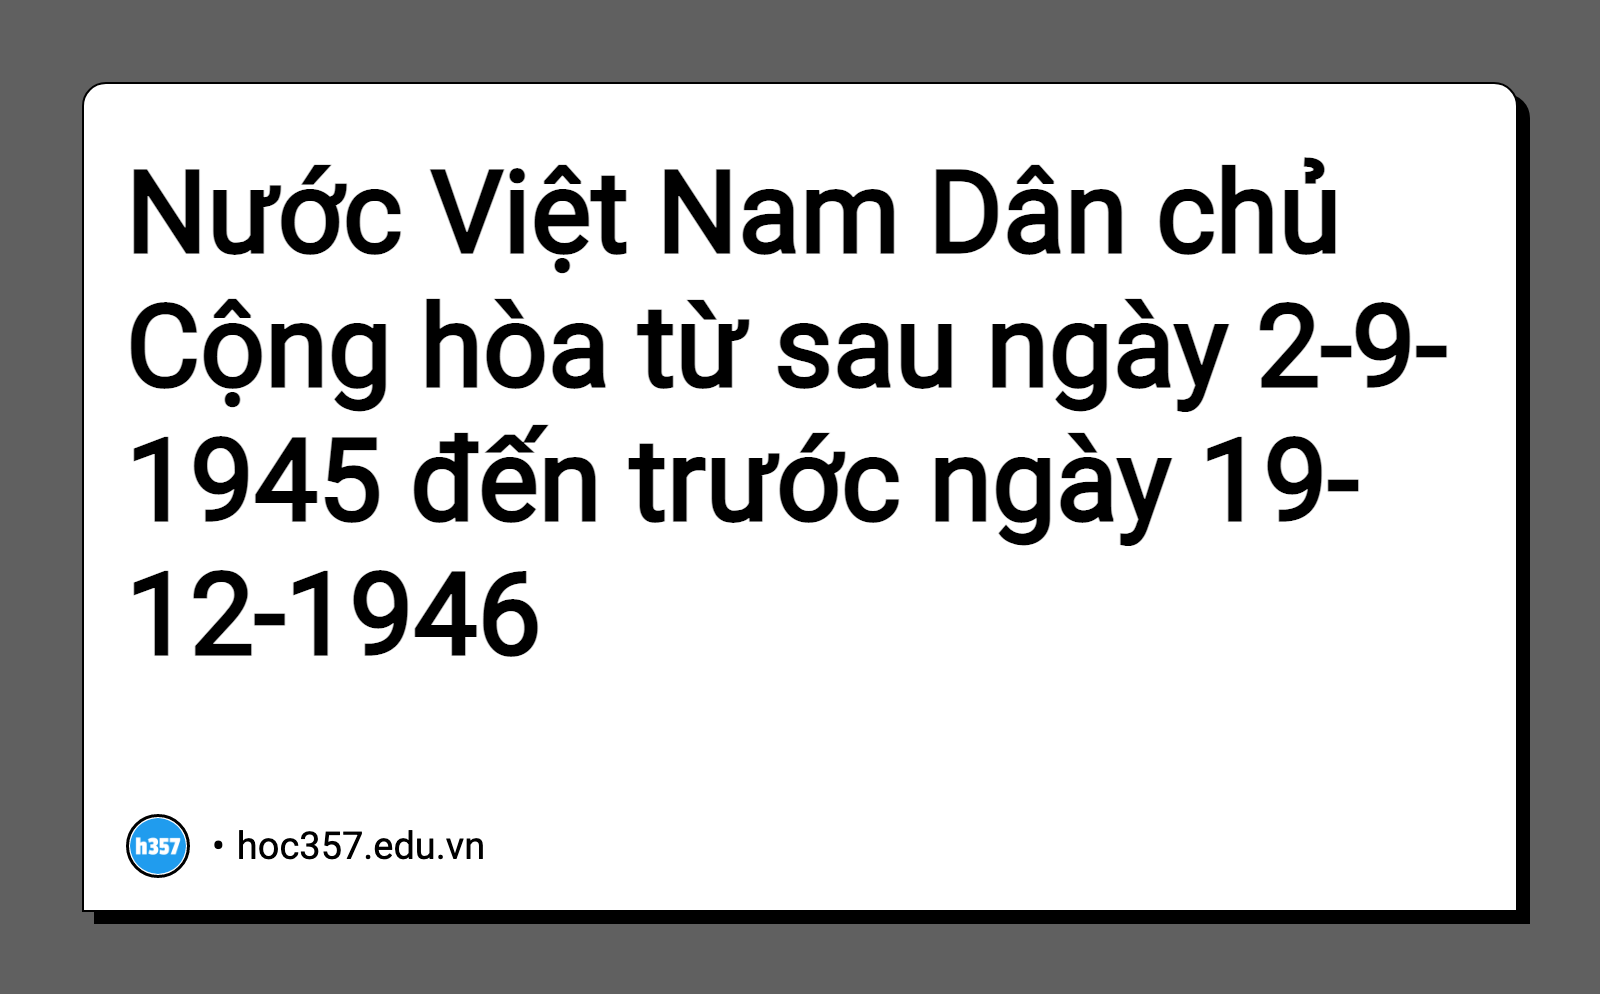 Hình minh họa Nước Việt Nam Dân chủ Cộng hòa từ sau ngày 2-9-1945 đến trước ngày 19-12-1946